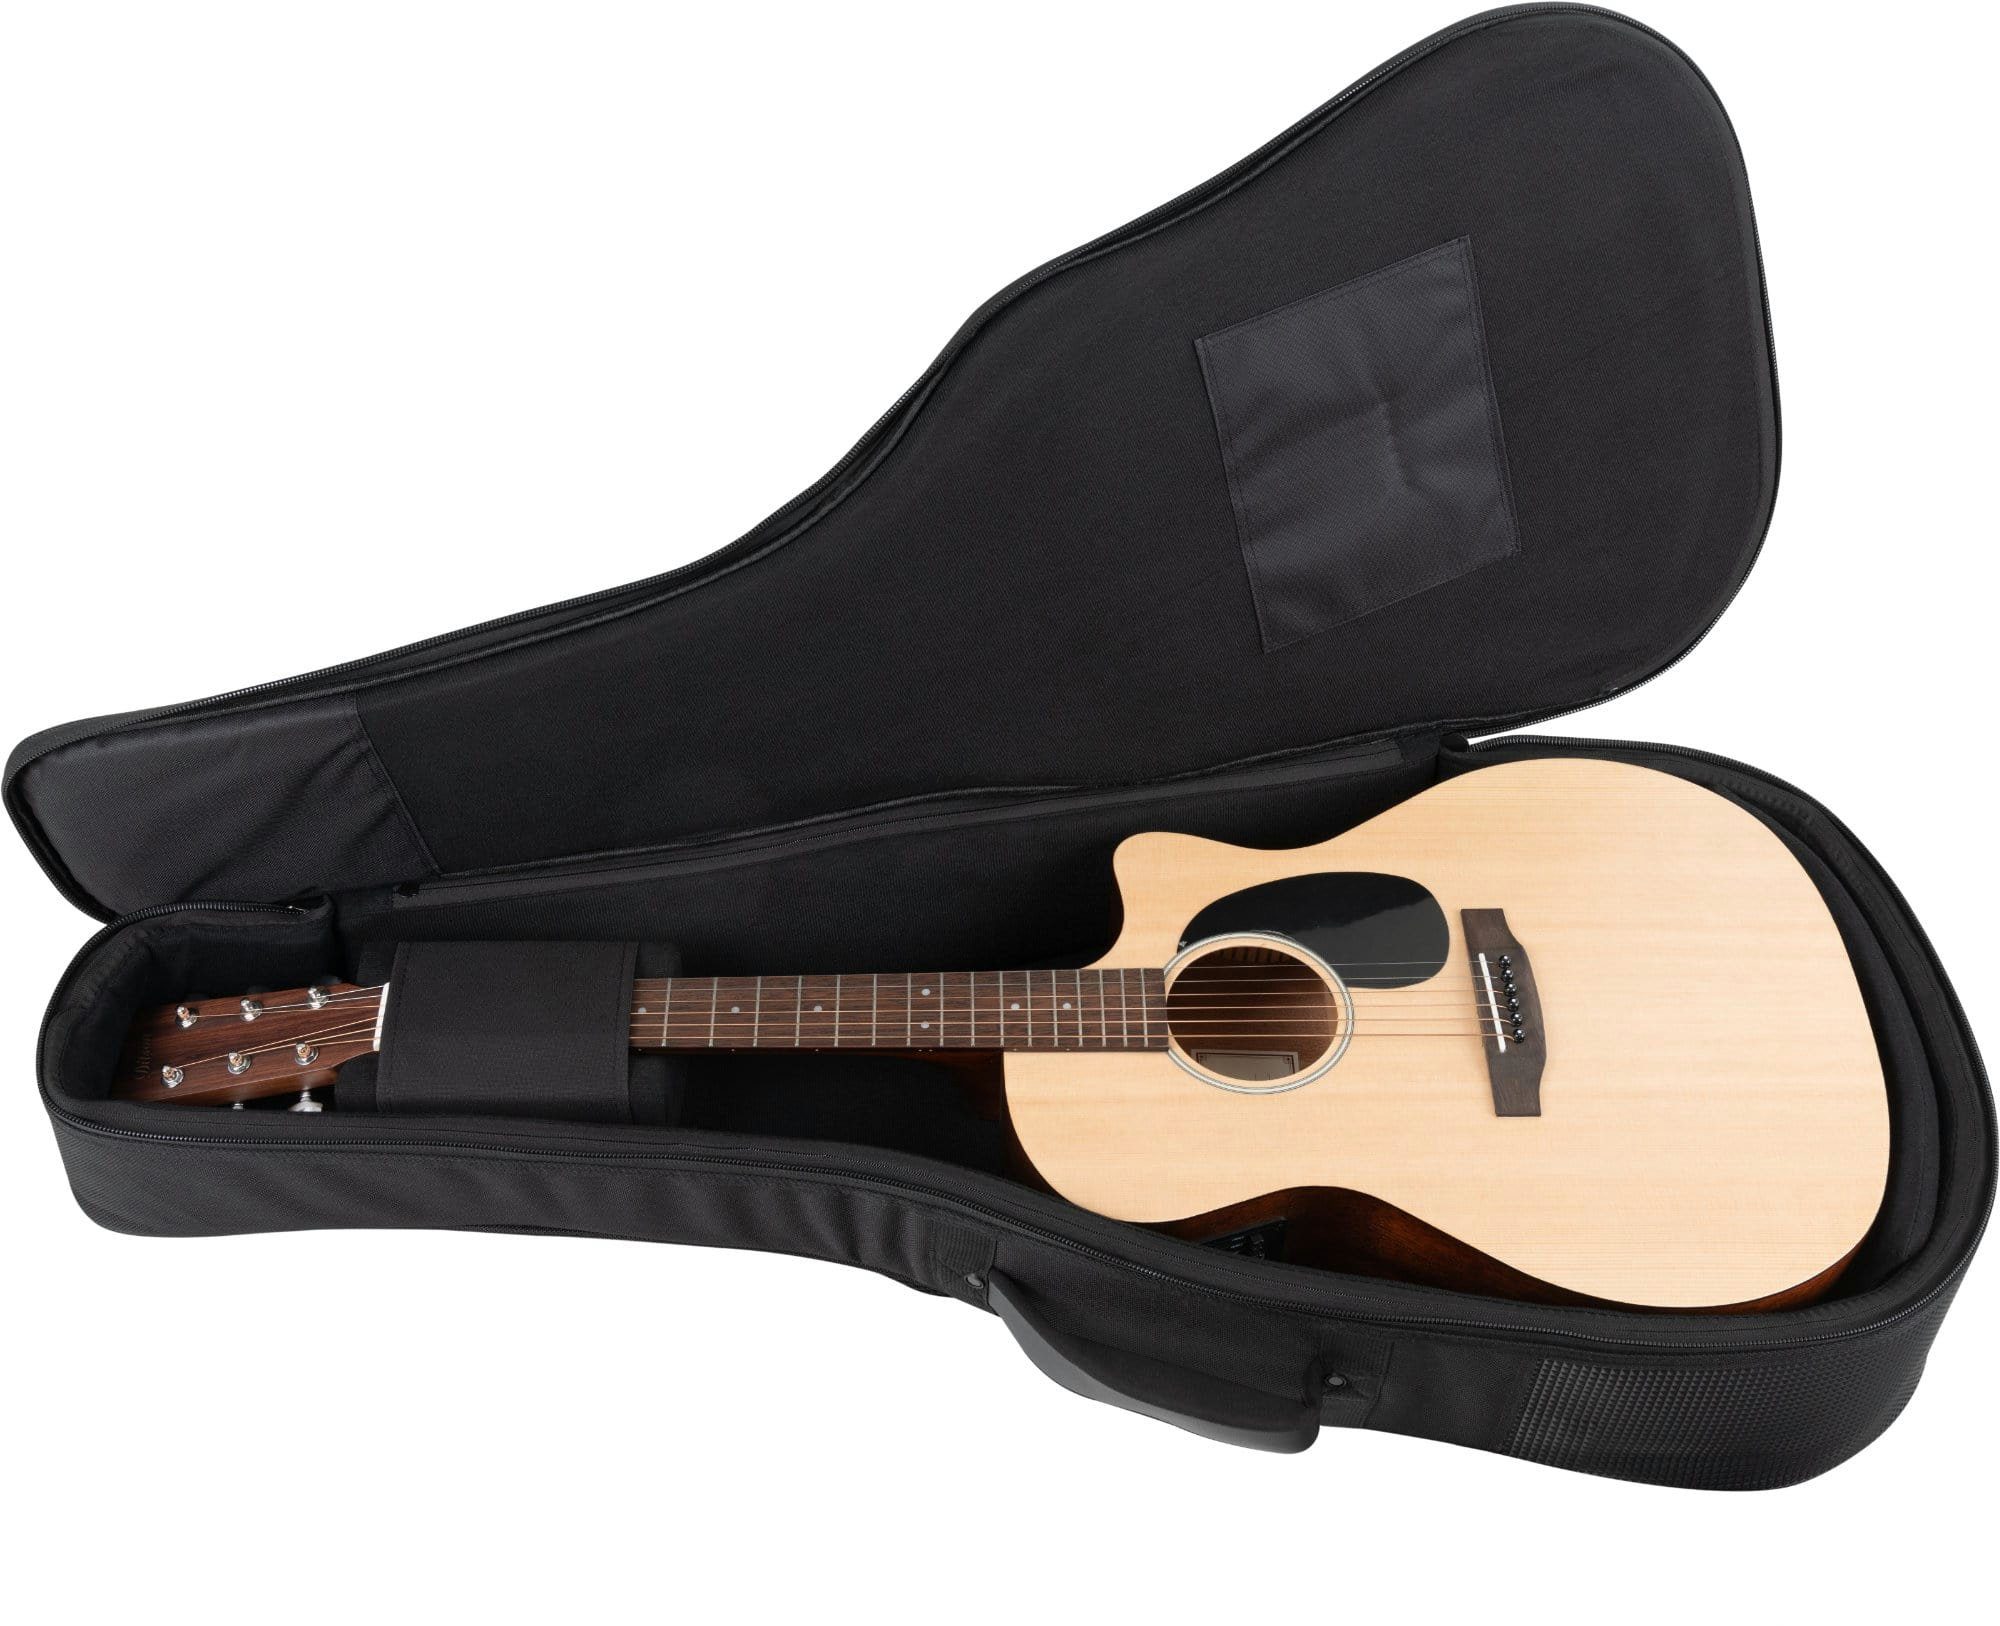 Shaman Gitarrentasche WGBT-4122BK Westerngitarre, Westerngitarren-Tasche mit gepolsterte für Rucksackgarnitur